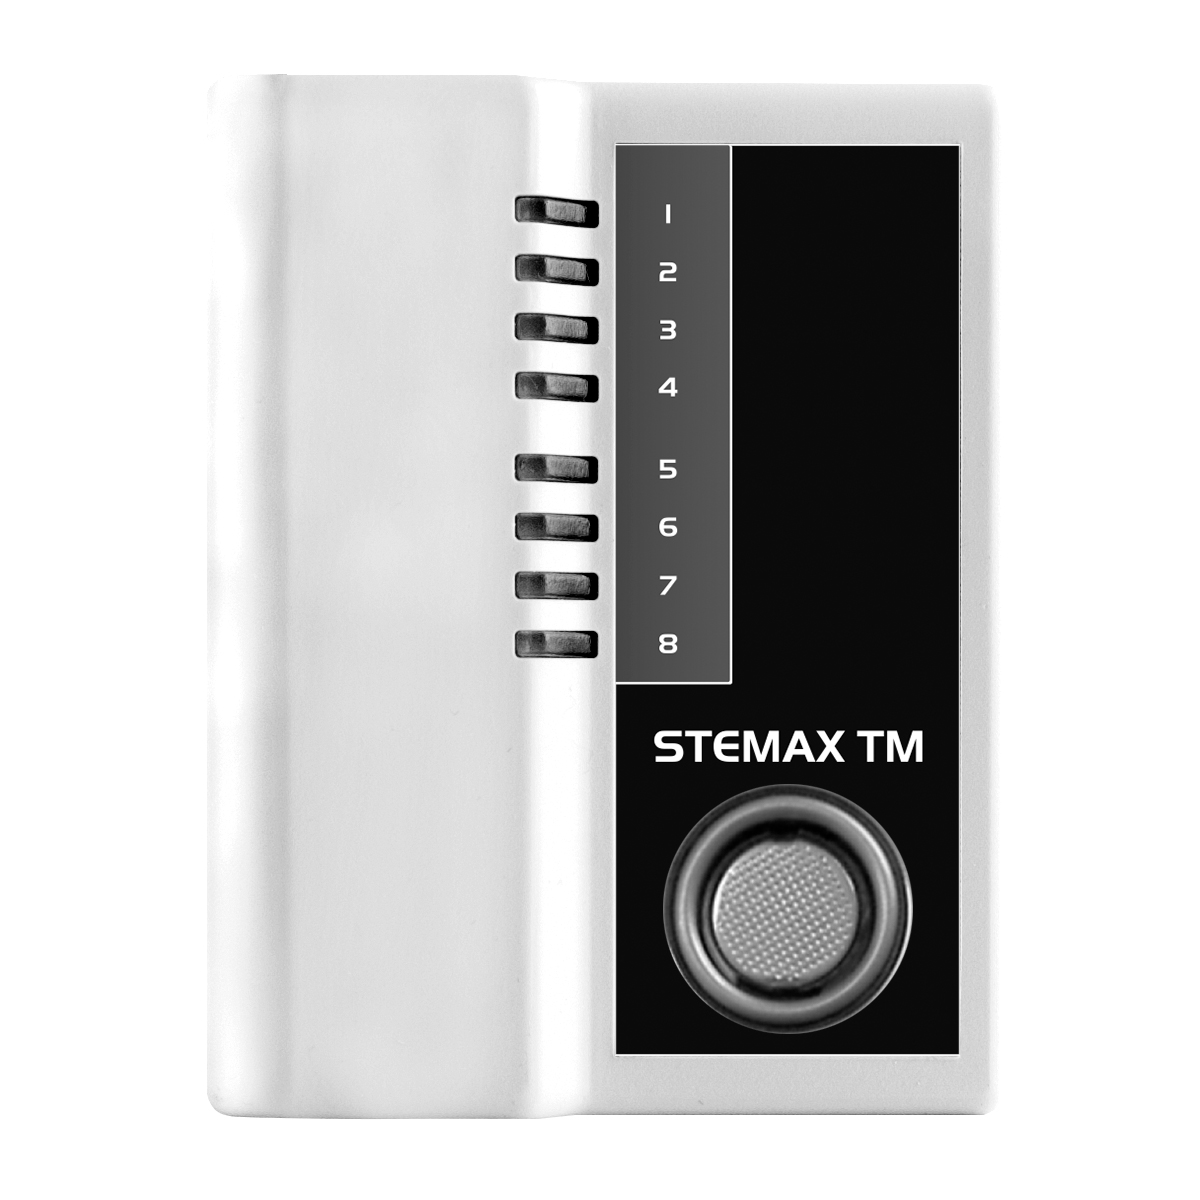 Внешний вид считывателя STEMAX TM